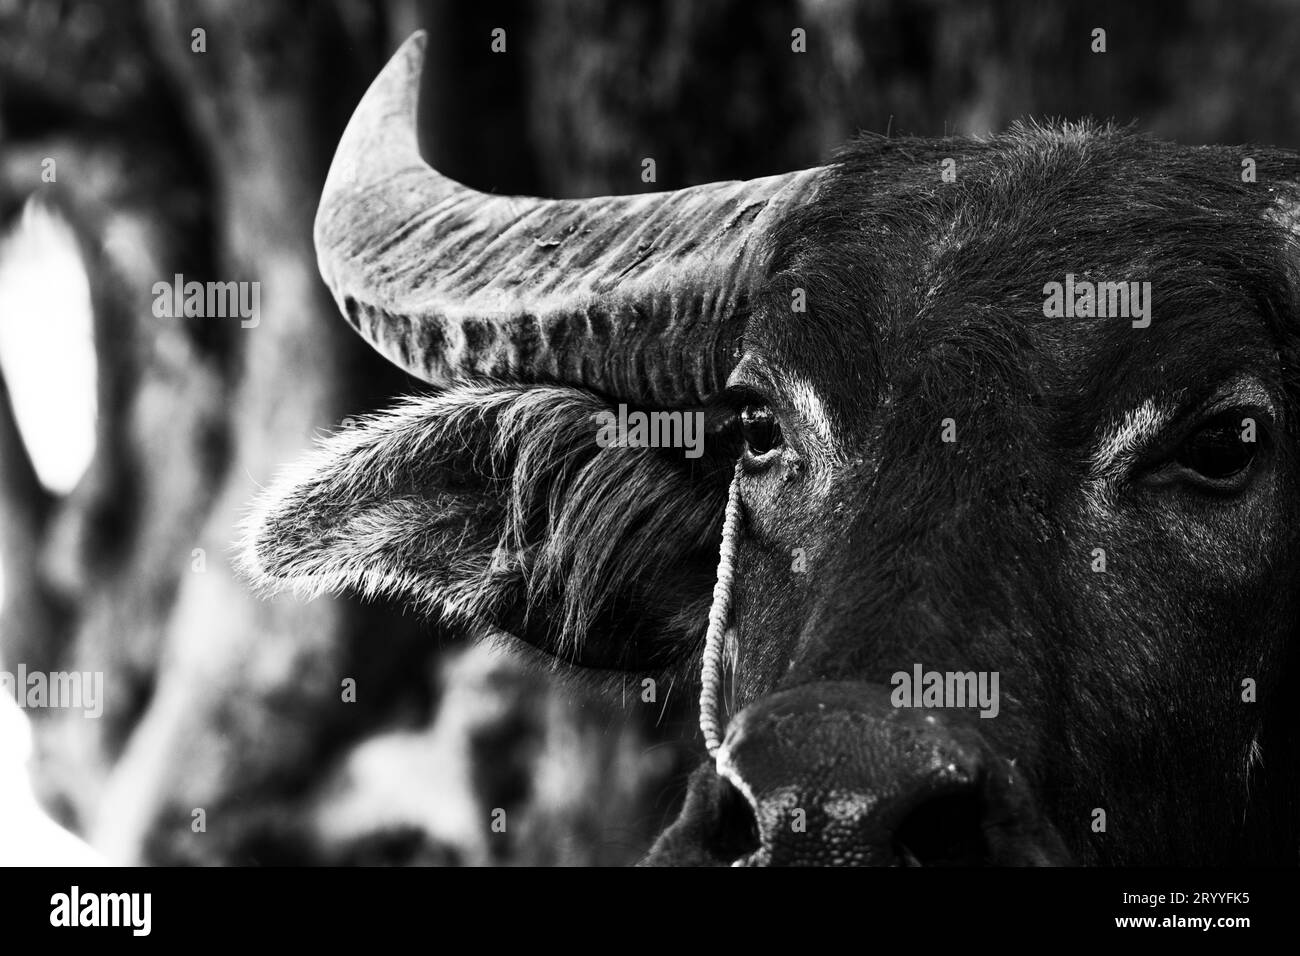 Primo piano del ritratto di bufalo d'acqua su sfondo bianco e nero. Foto con la testa sul viso. Concetto di animali e mammiferi. Thai Foto Stock